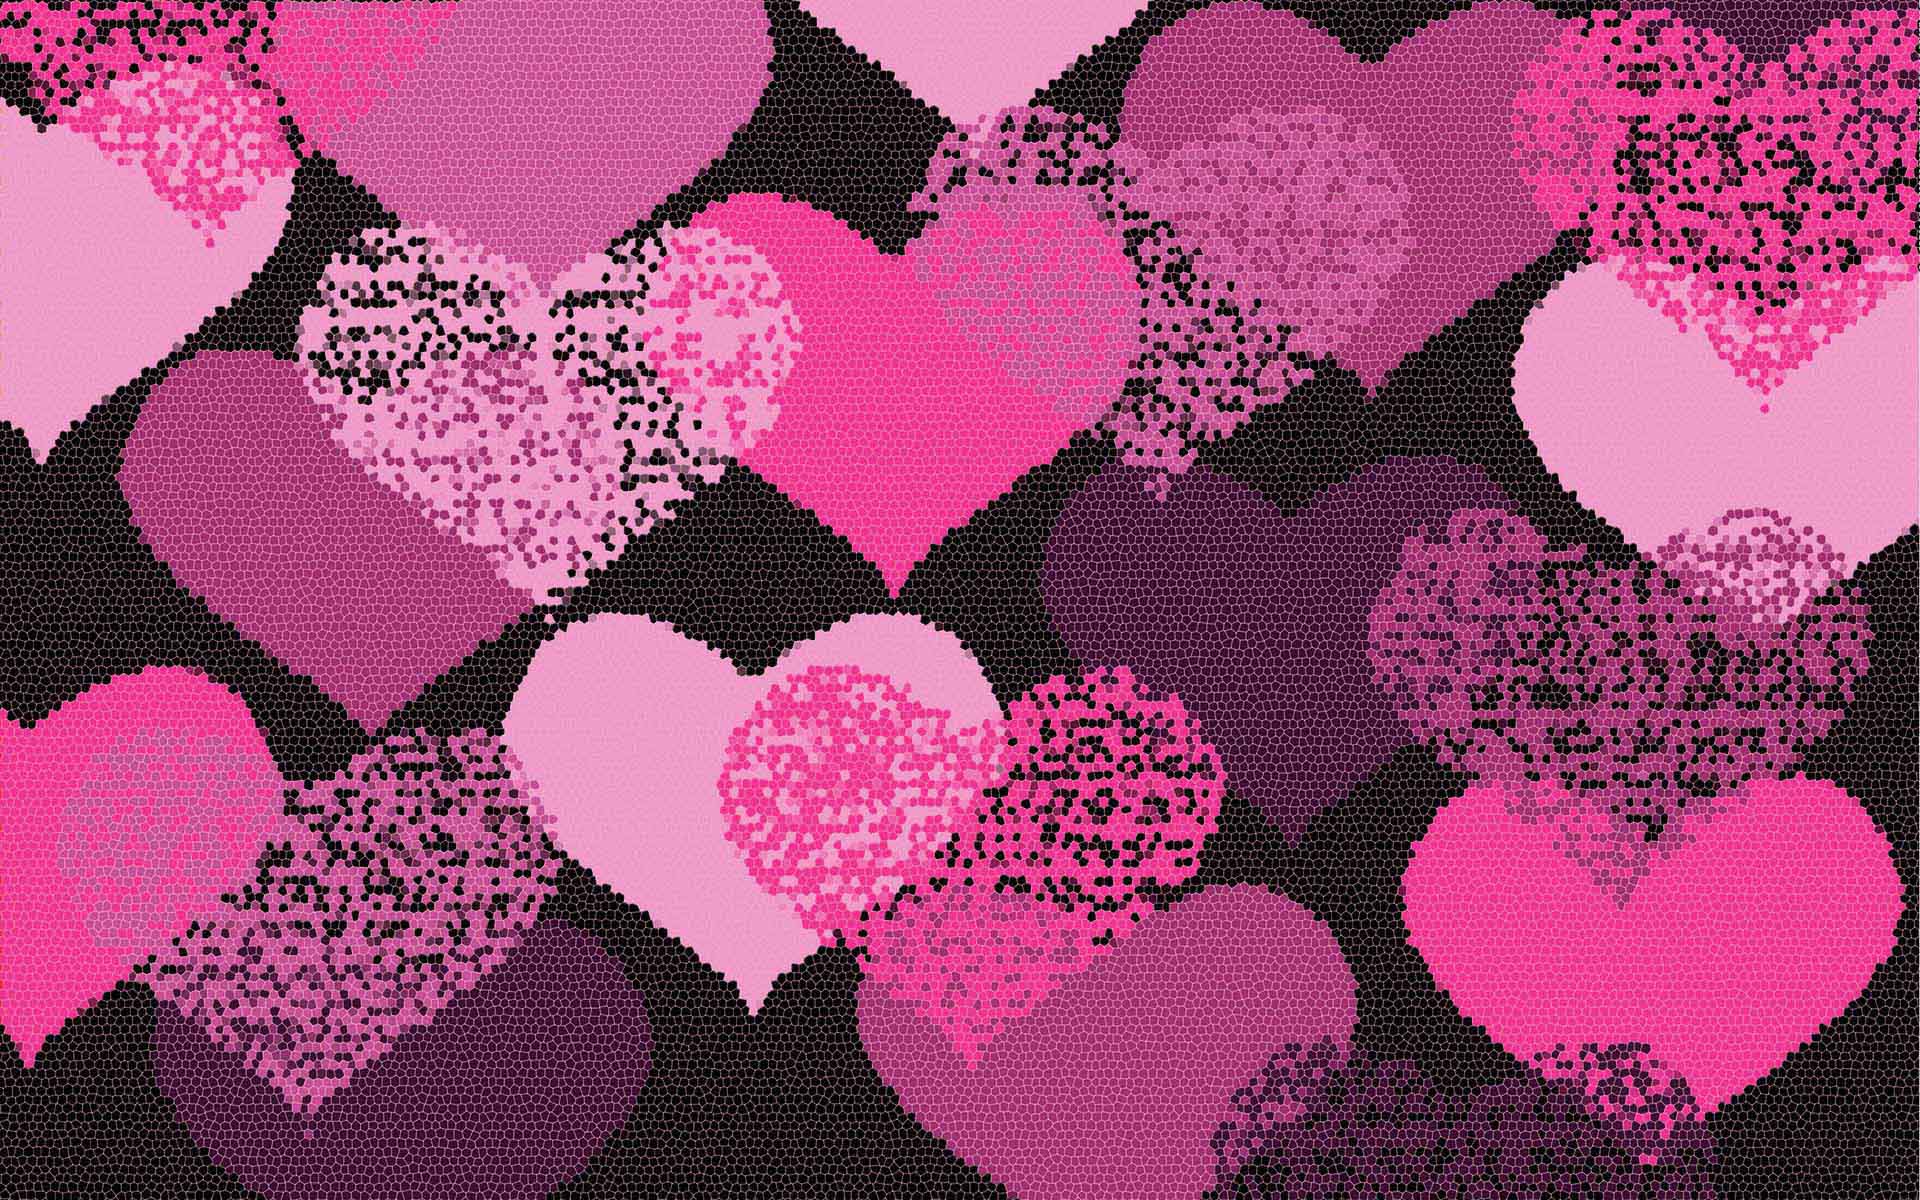 Hơn 60 hình nền Sparkle Love Pink đầy quyến rũ sẽ làm bạn phải hài lòng. Hãy tải xuống ngay để có một nền máy tính đẹp mắt, phù hợp với phong cách thời trang của bạn.